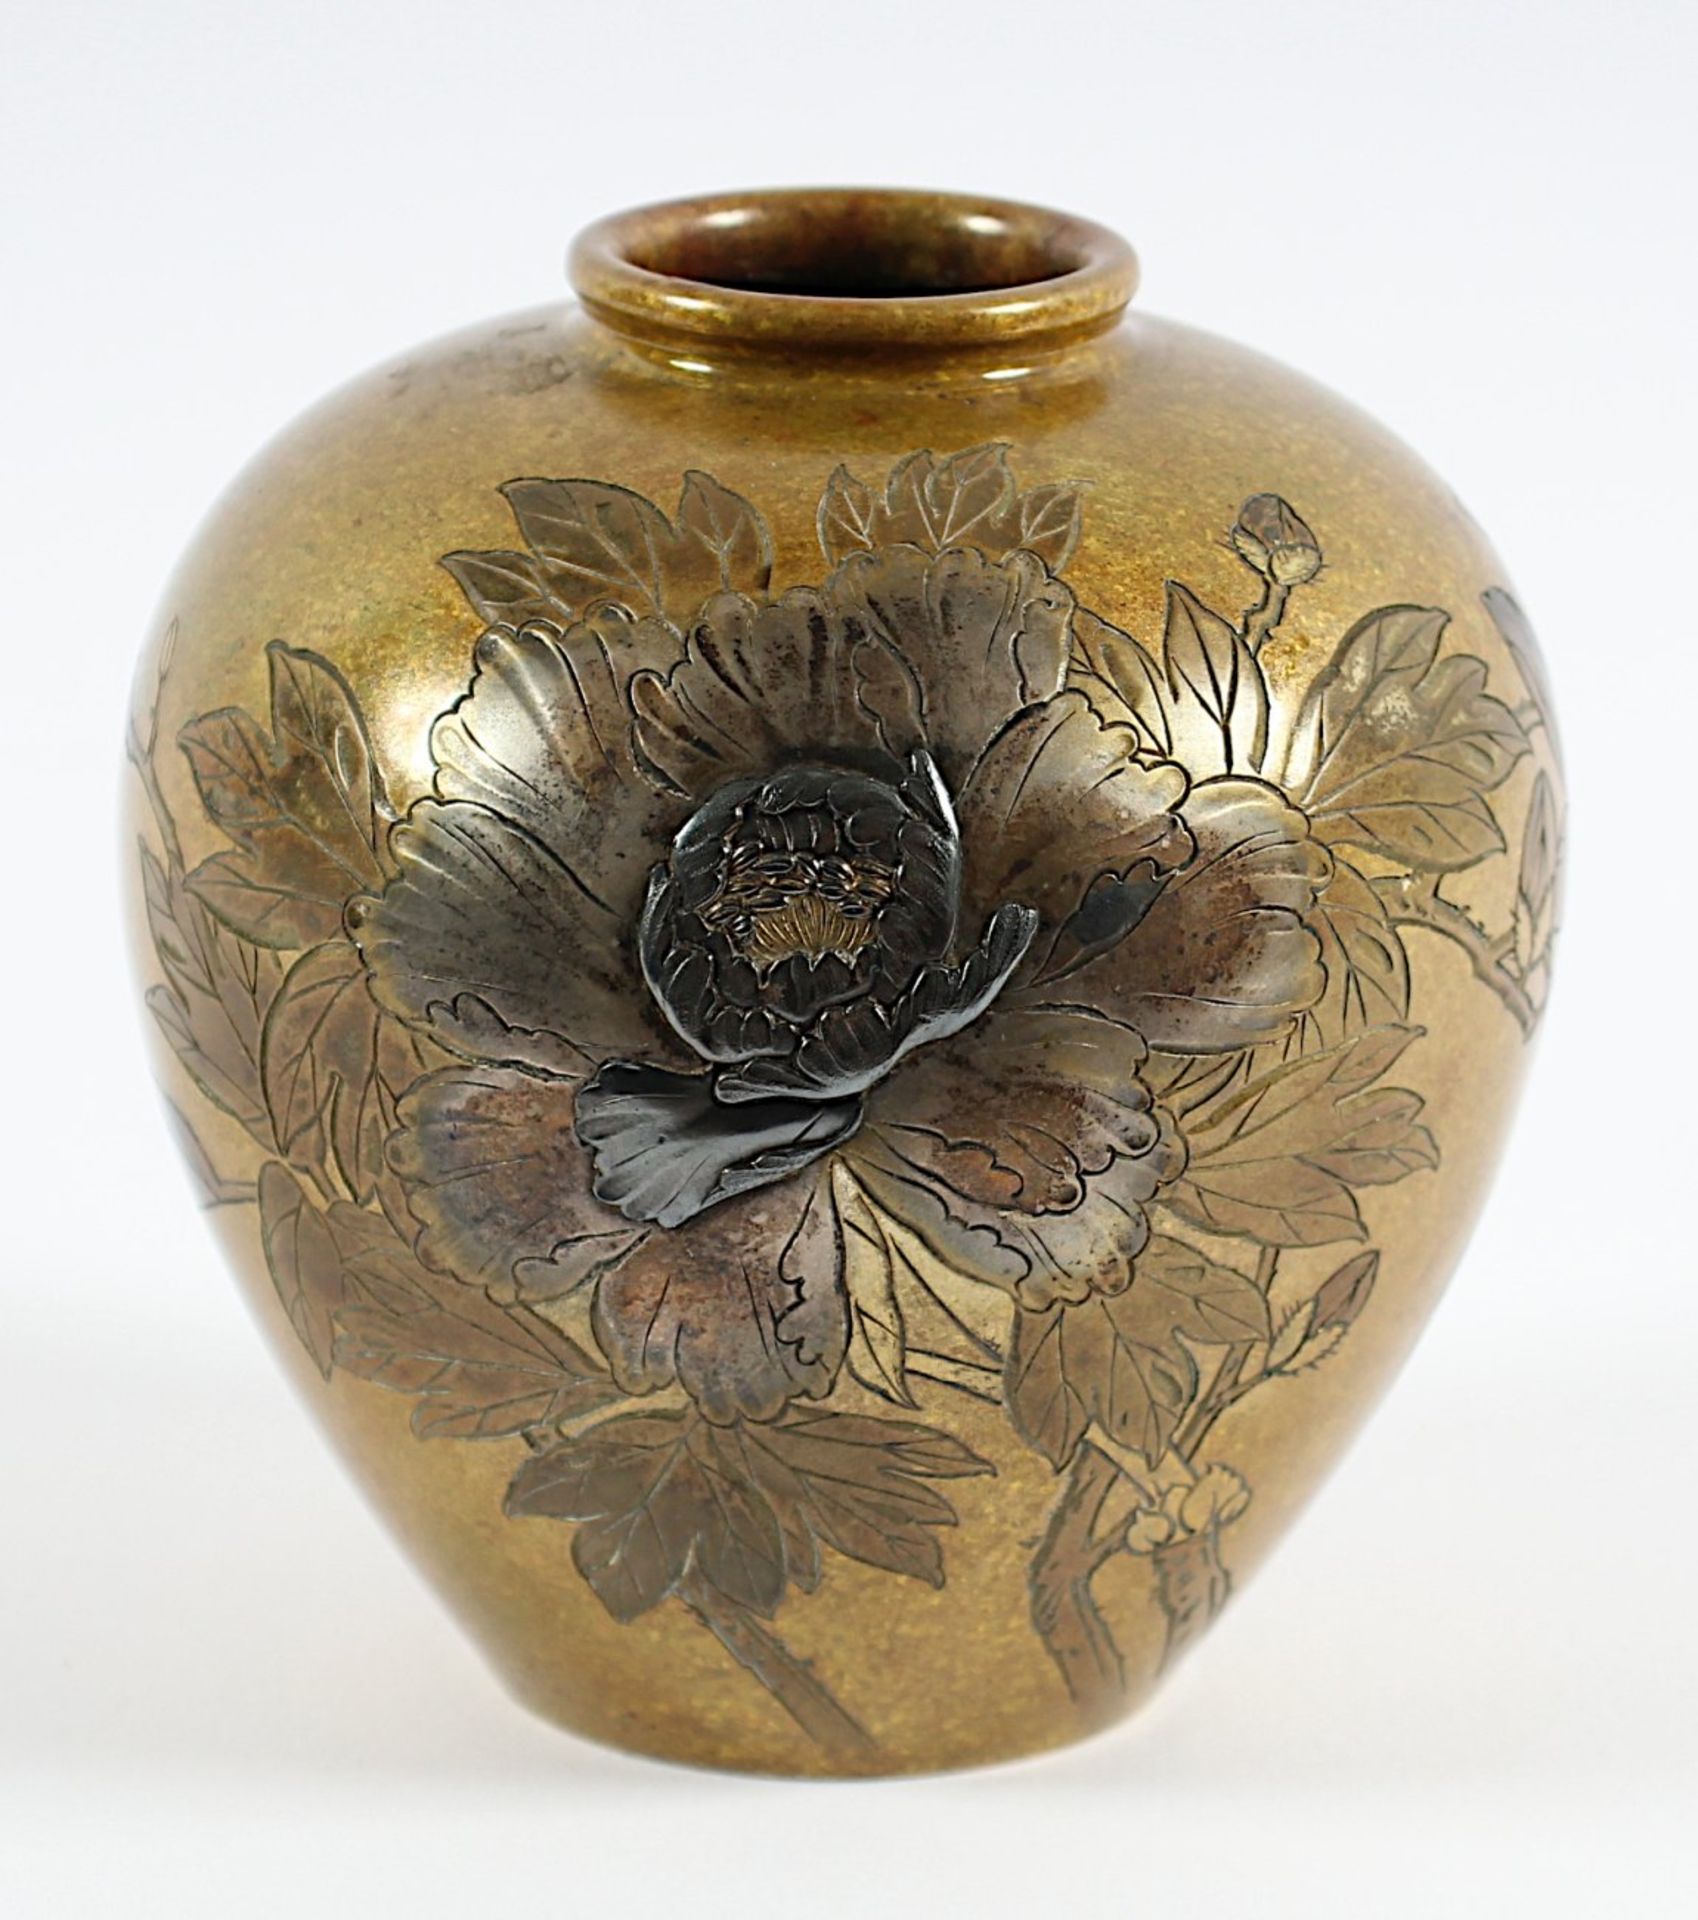 KLEINE VASE, Bronze, in Buntmetalleinlagen und graviert Chrysanthemen, H 11, min. fleckig,